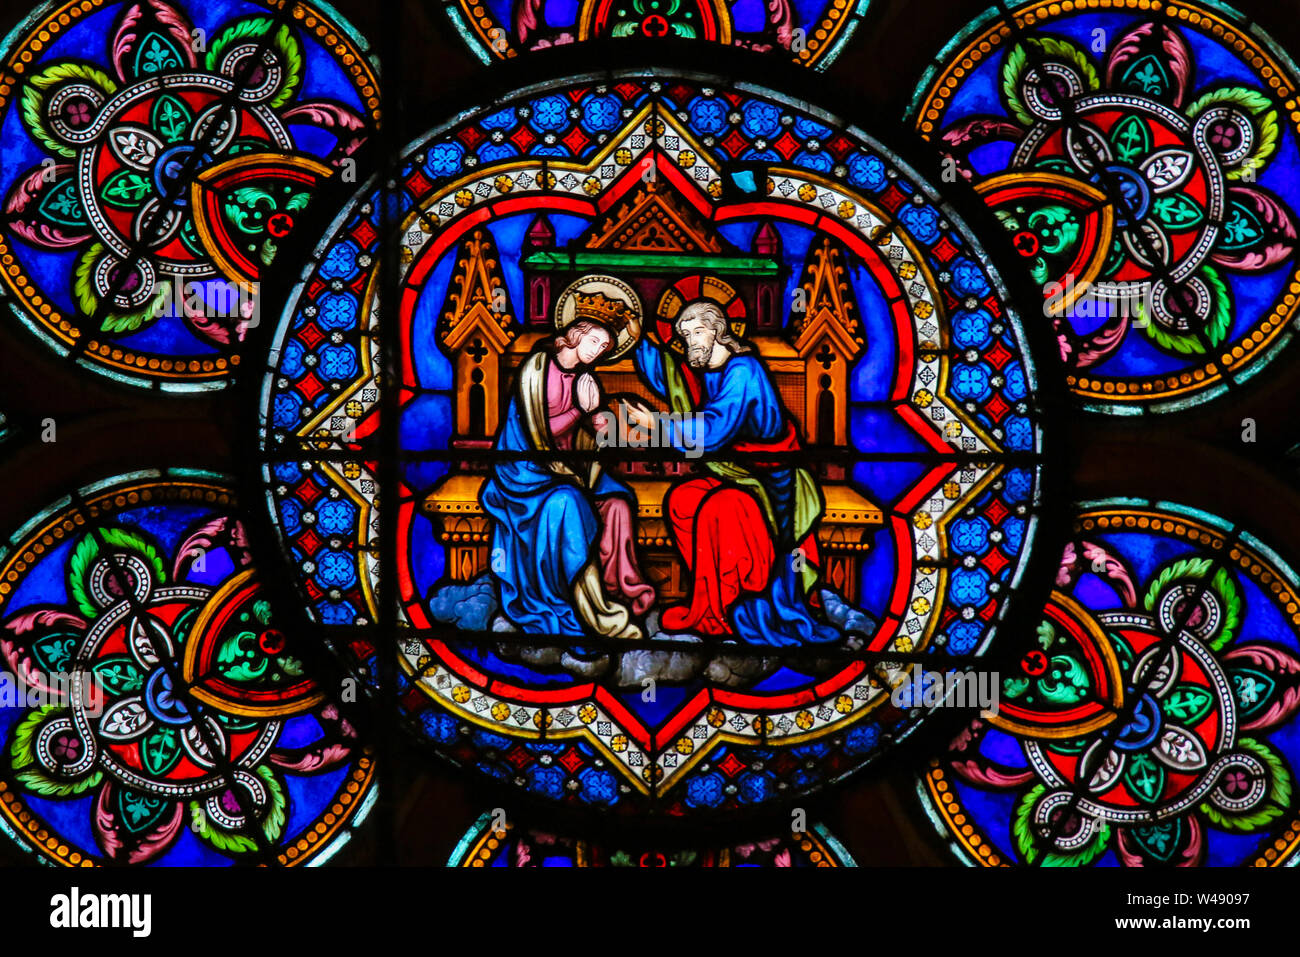 Vitraux dans la Cathédrale de Notre Dame, Paris, France, représentant le couronnement de Marie Mère de Jésus dans le ciel. Banque D'Images